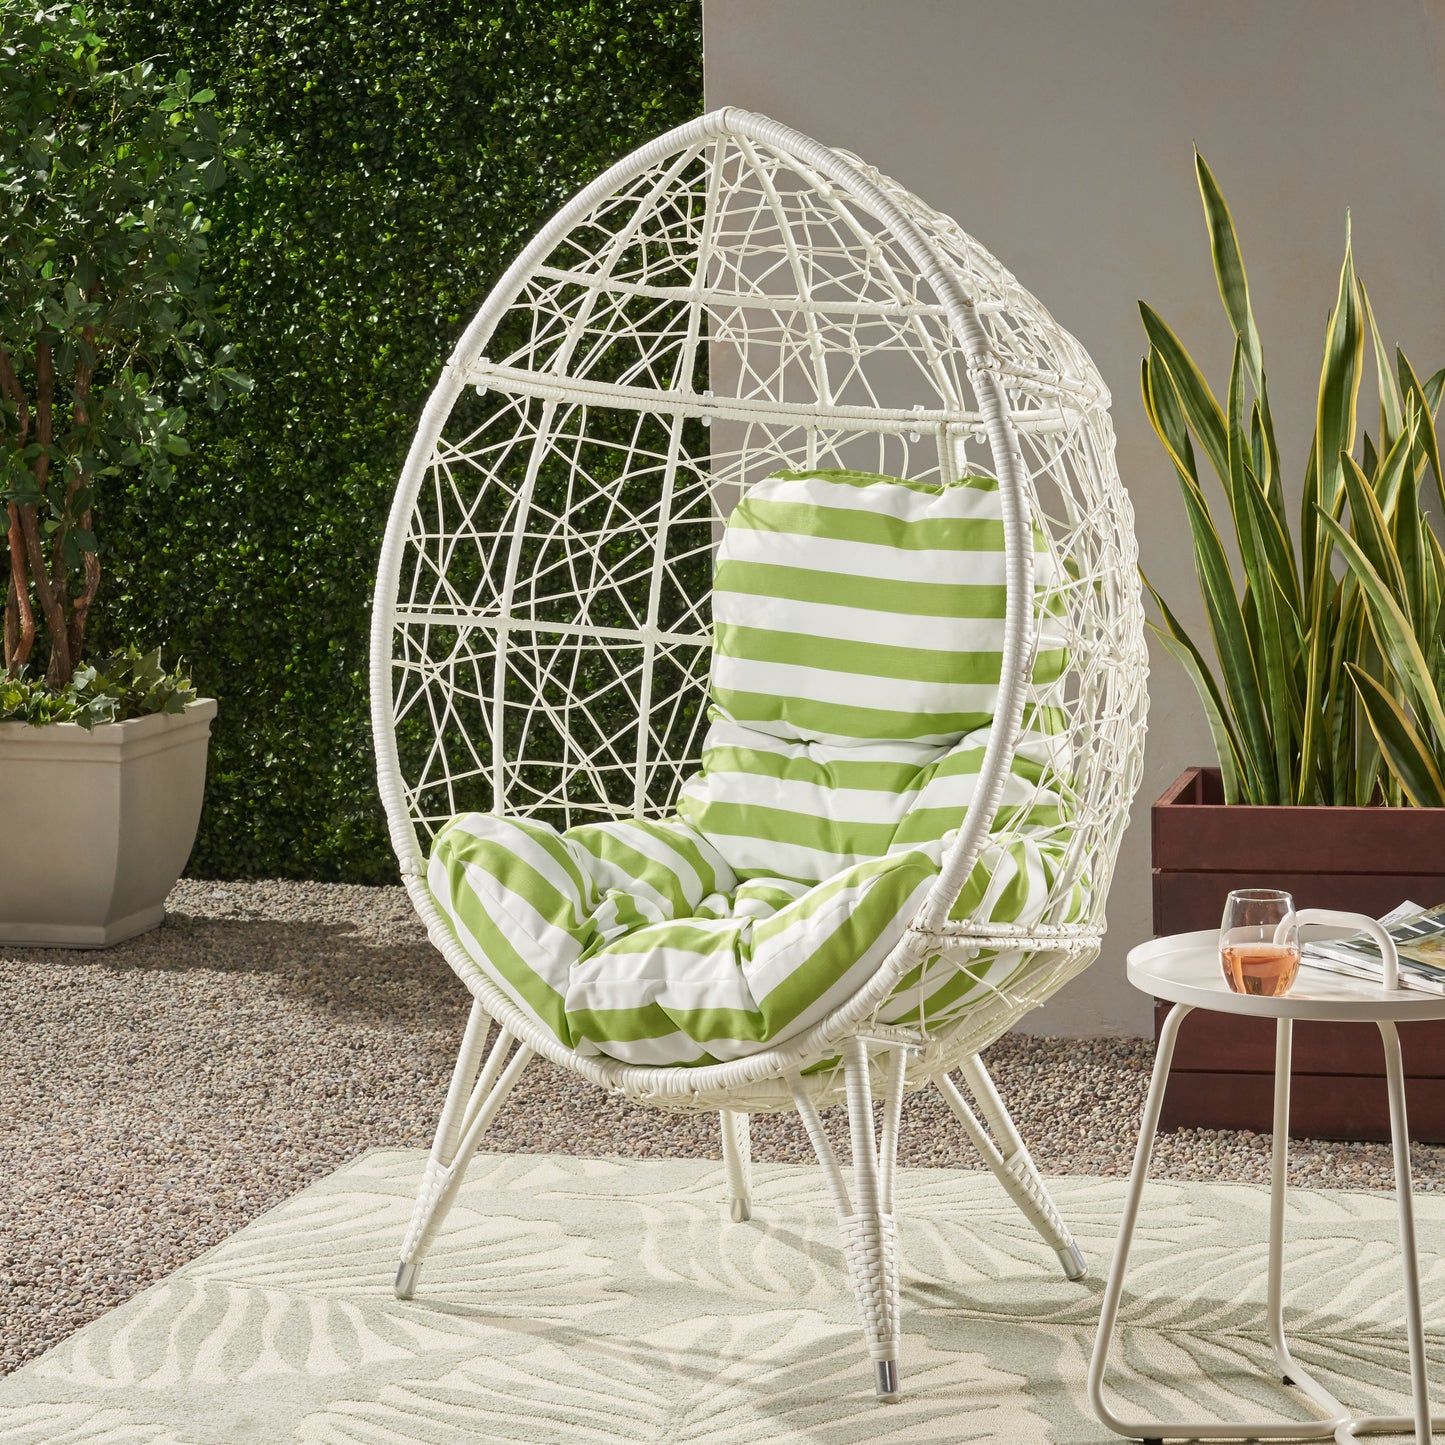 Hendryx Outdoor Freestanding Wicker Teardrop / Egg Chair